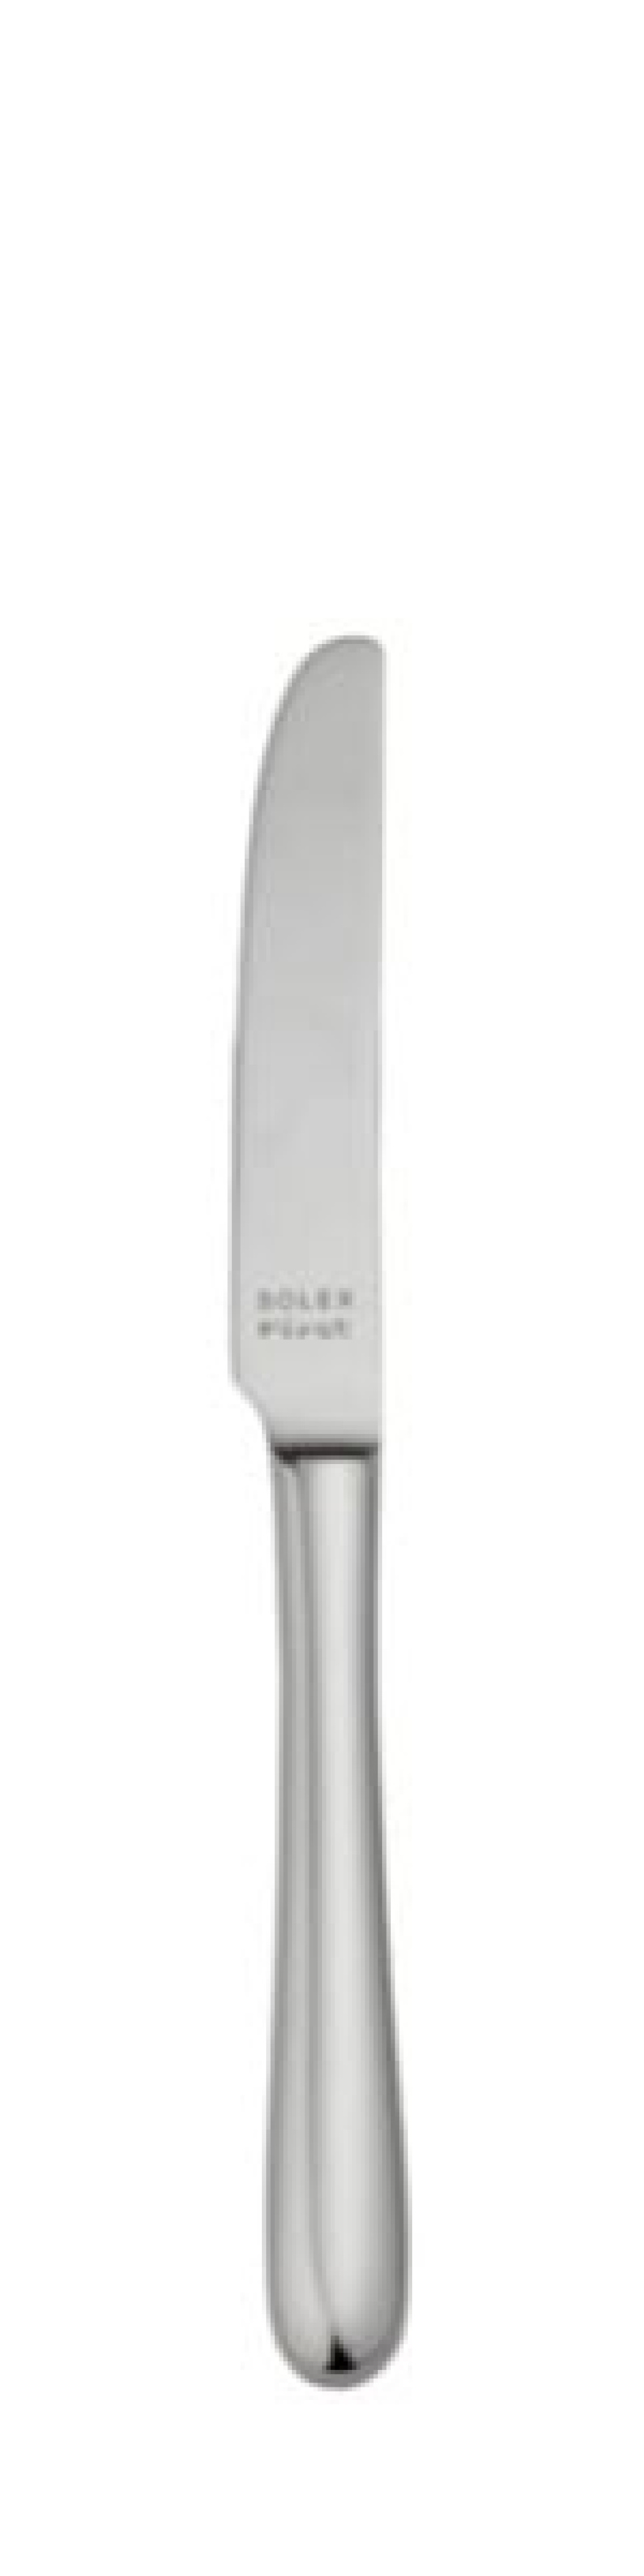 Nóż deserowy Anna 223 mm - Solex w grupie Nakrycie stołu / Sztućce / Noże w The Kitchen Lab (1284-21570)